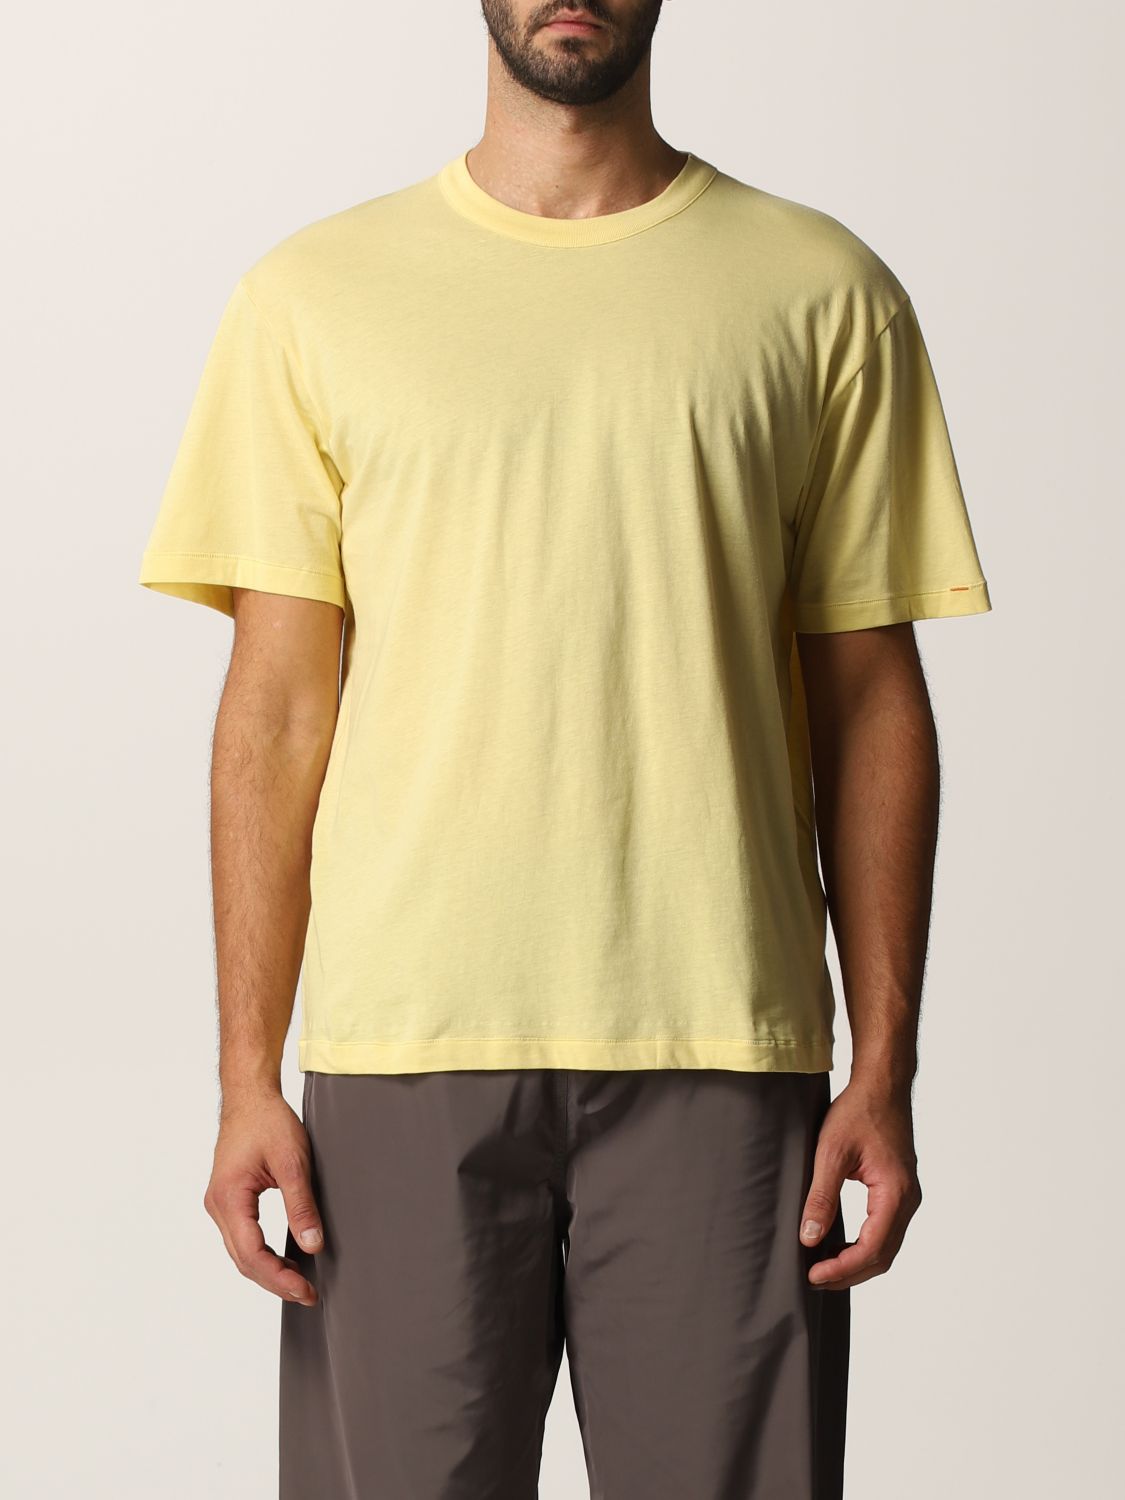 T恤 Heron Preston For Calvin Klein: Orange 2.0 Heron Preston x Calvin Klein 棉质 T恤三件套 黑色 5